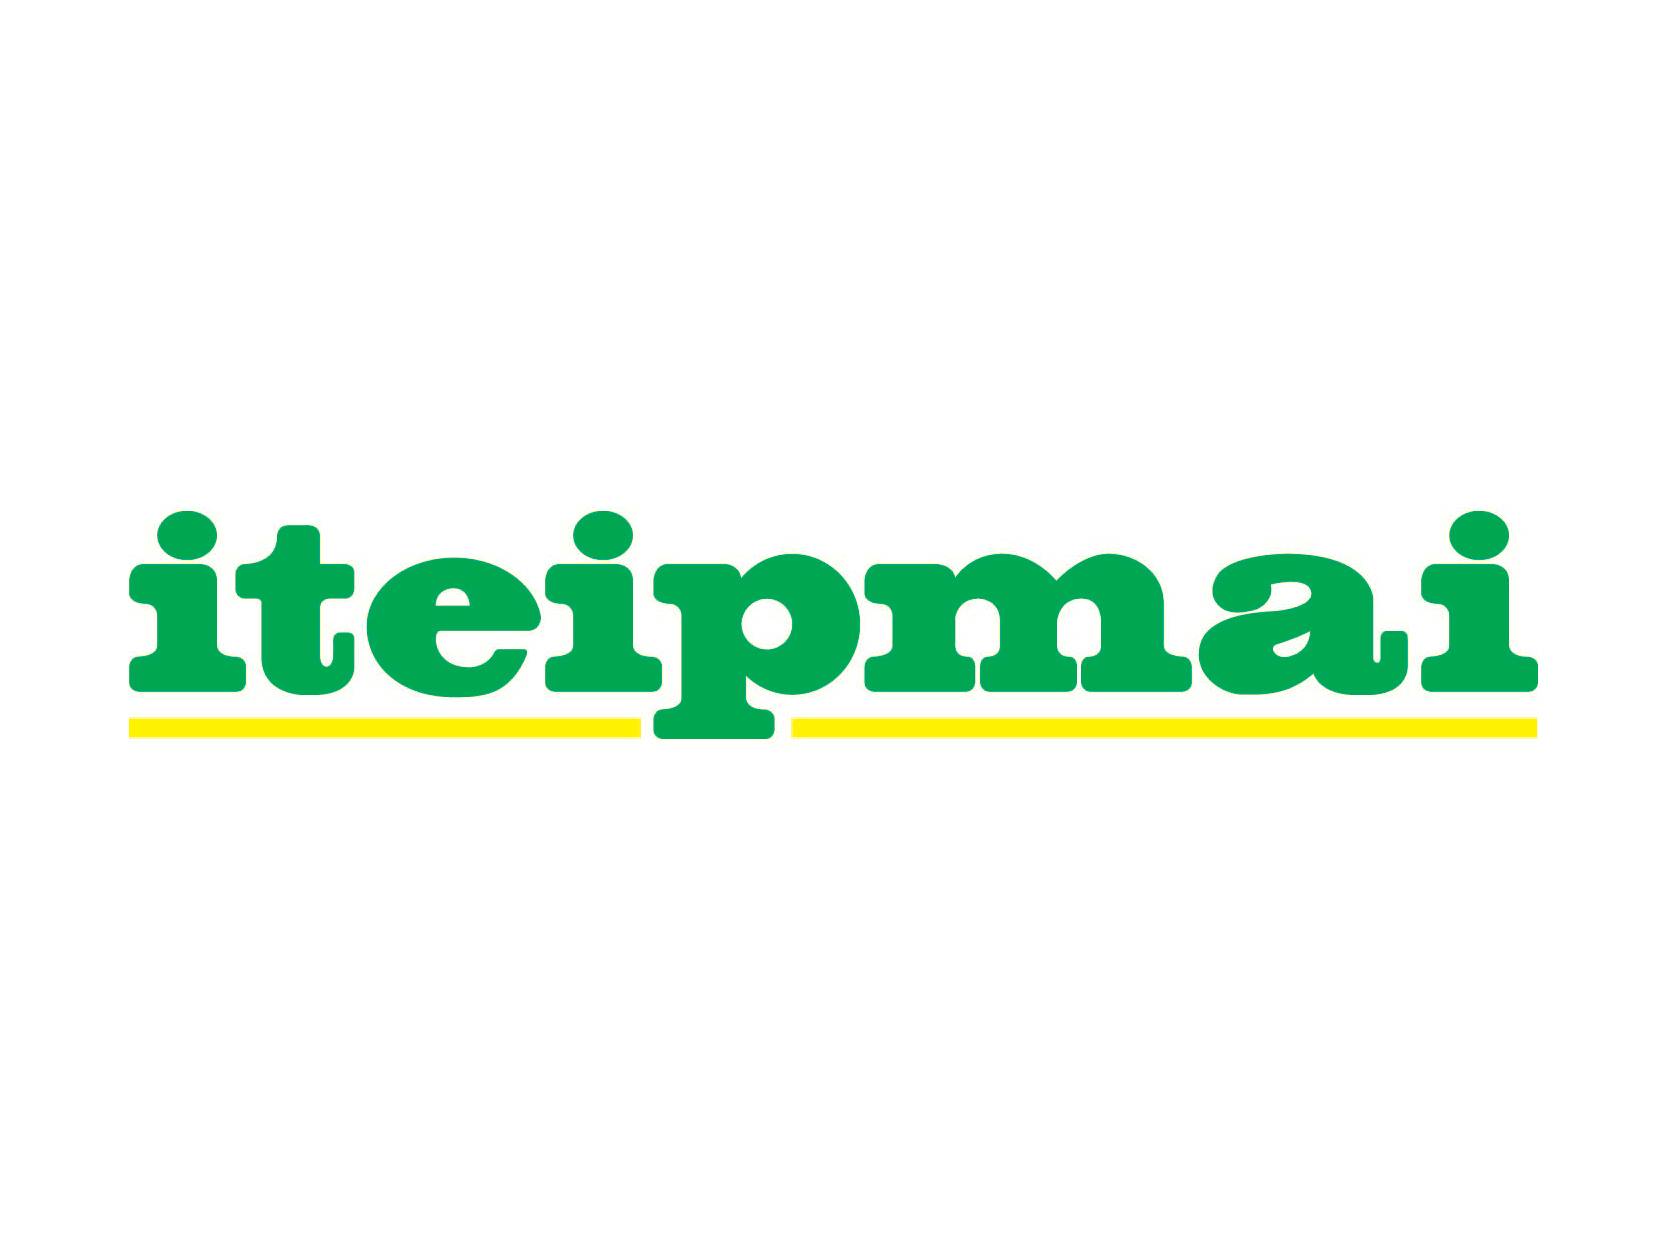 Logo de l'ITEIPMAI